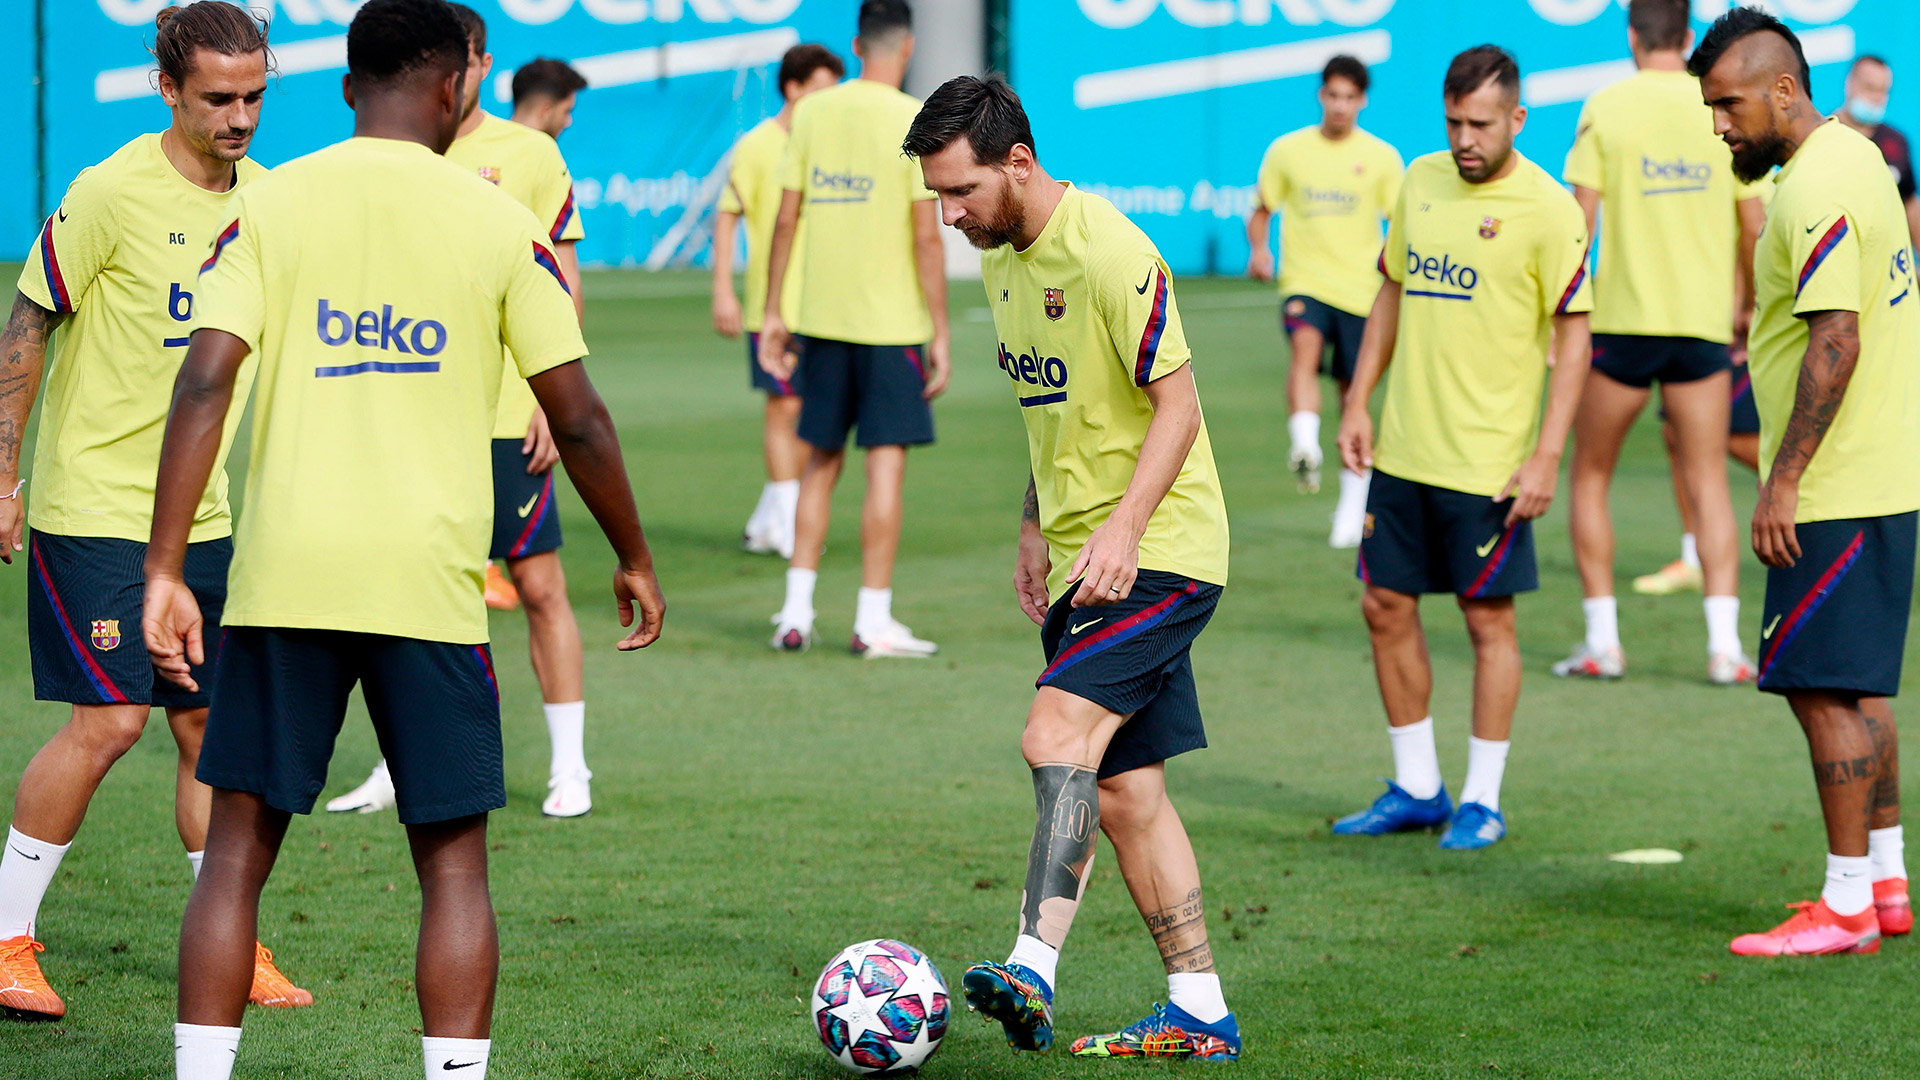 Una imagen que se volverá a ver la próxima semana cuando Messi regrese a las prácticas del nuevo Barcelona de Koeman